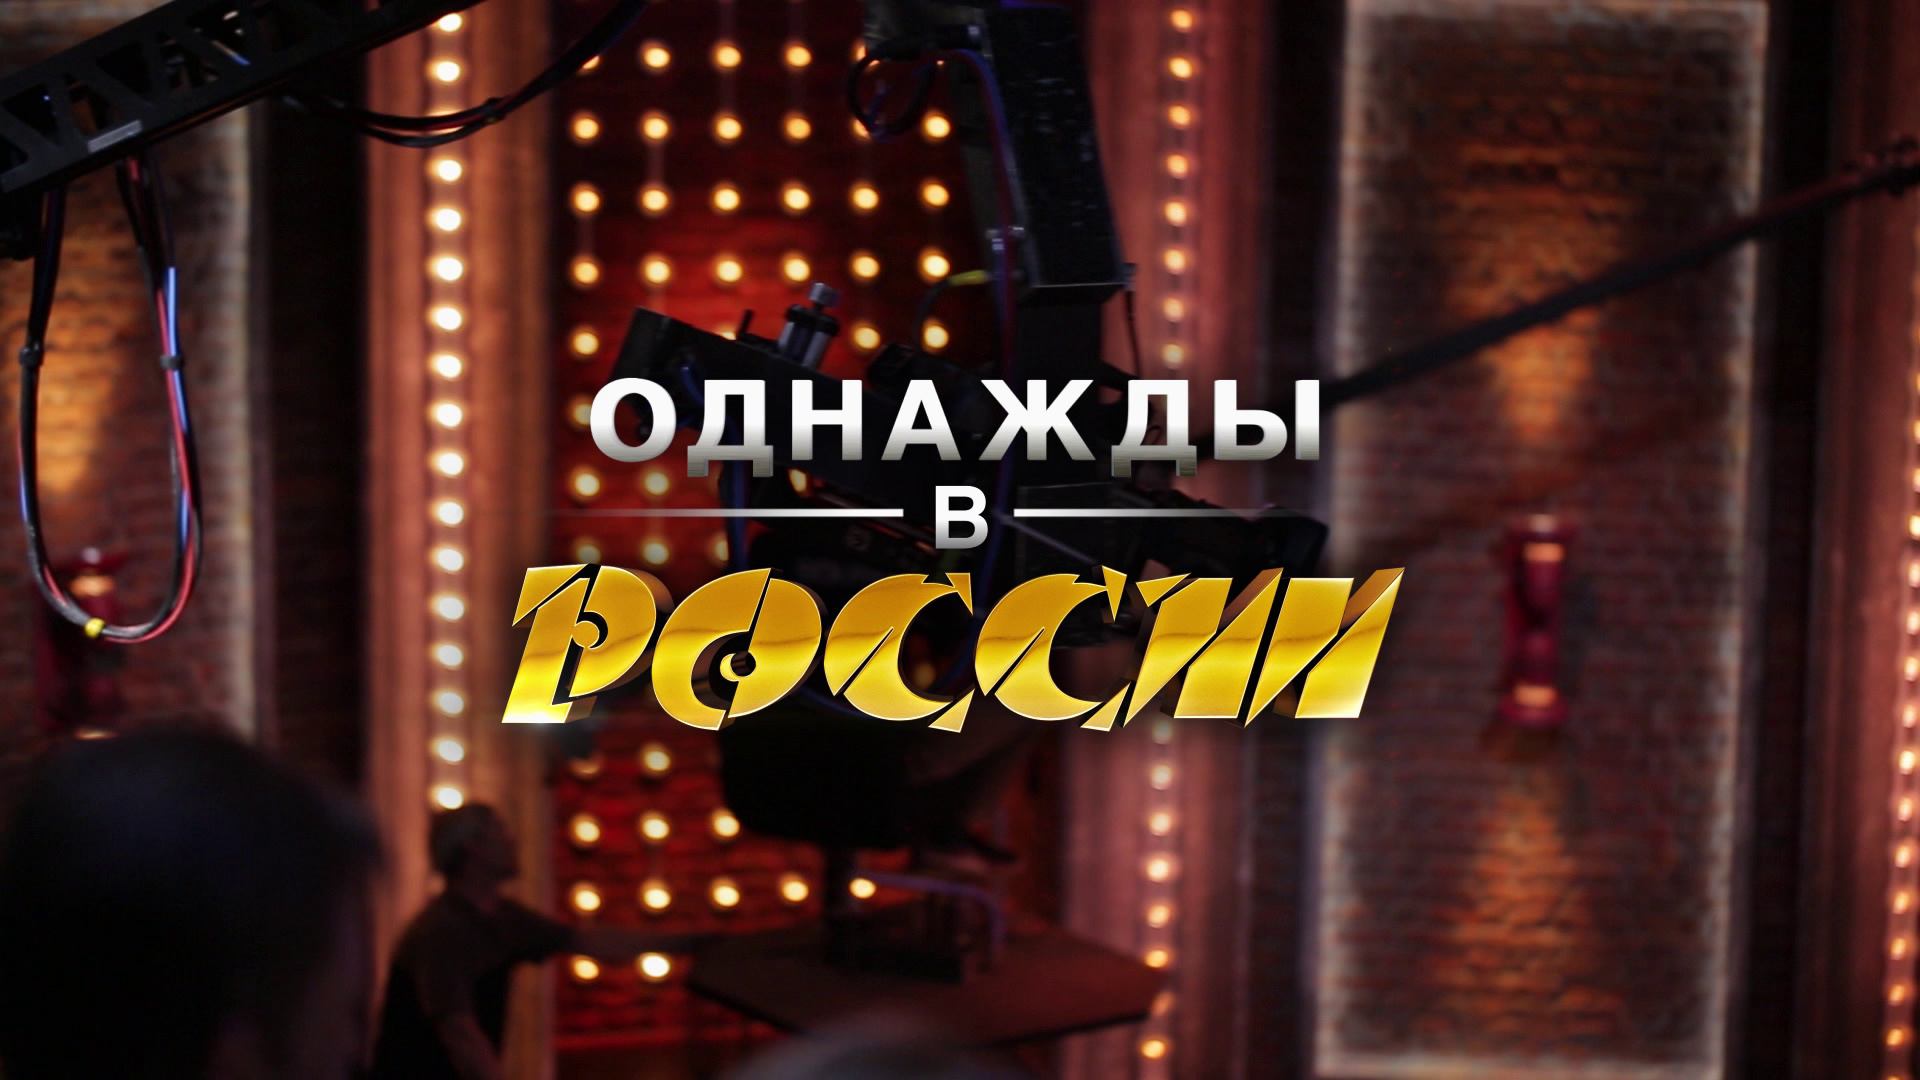 Однажды в России логотип